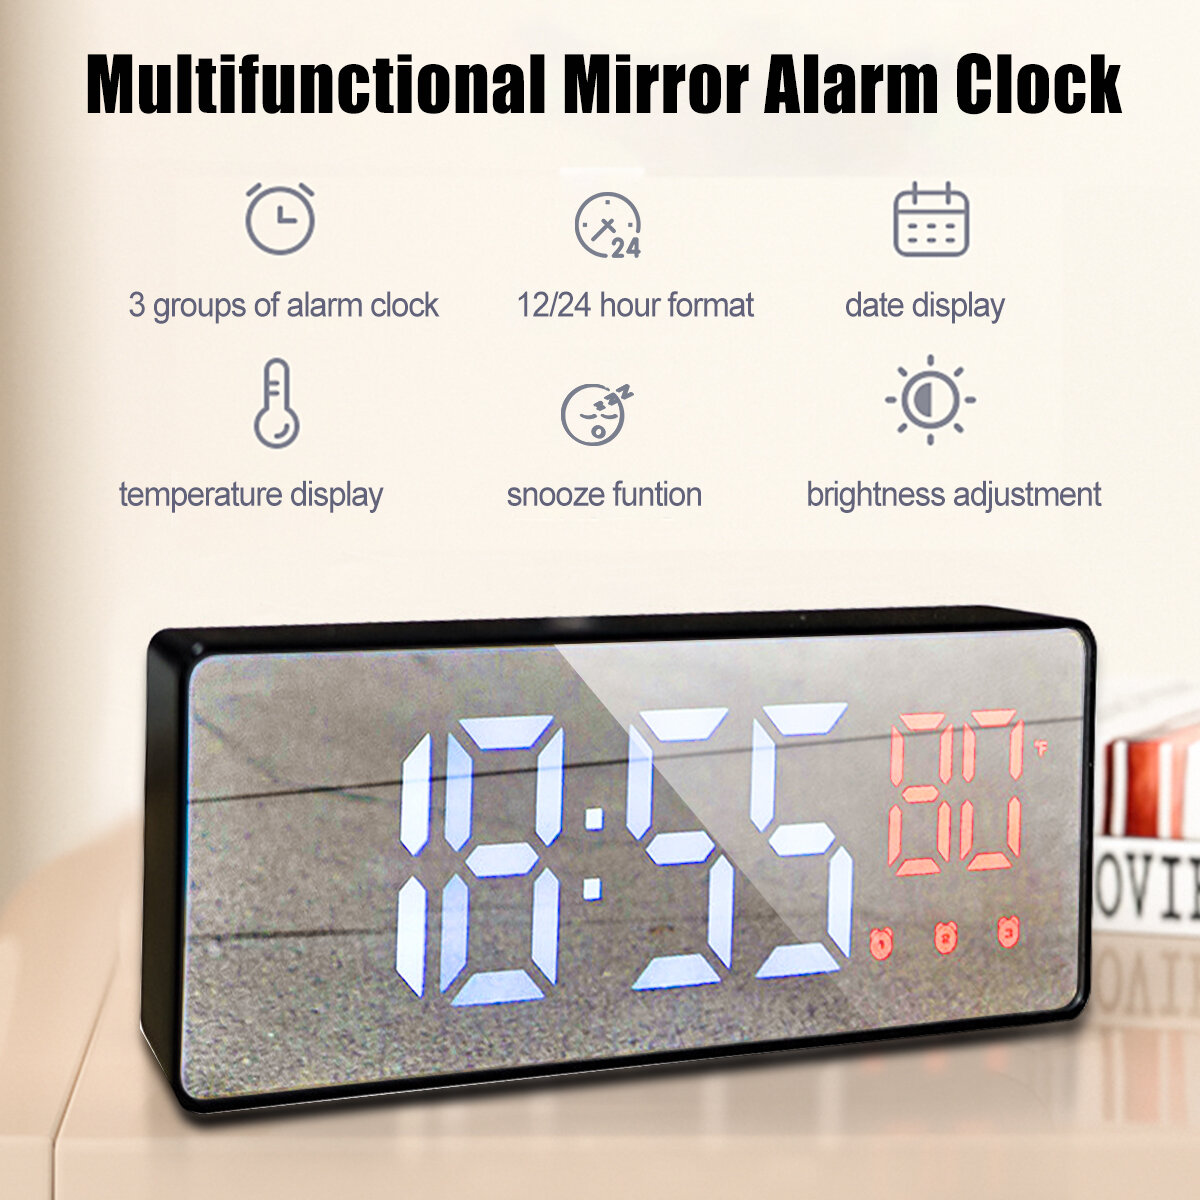 

Bakeey Mirror Alarm Часы LED Цифровое голосовое управление Время повтора сигнала Температура Дисплей Будильник Часы